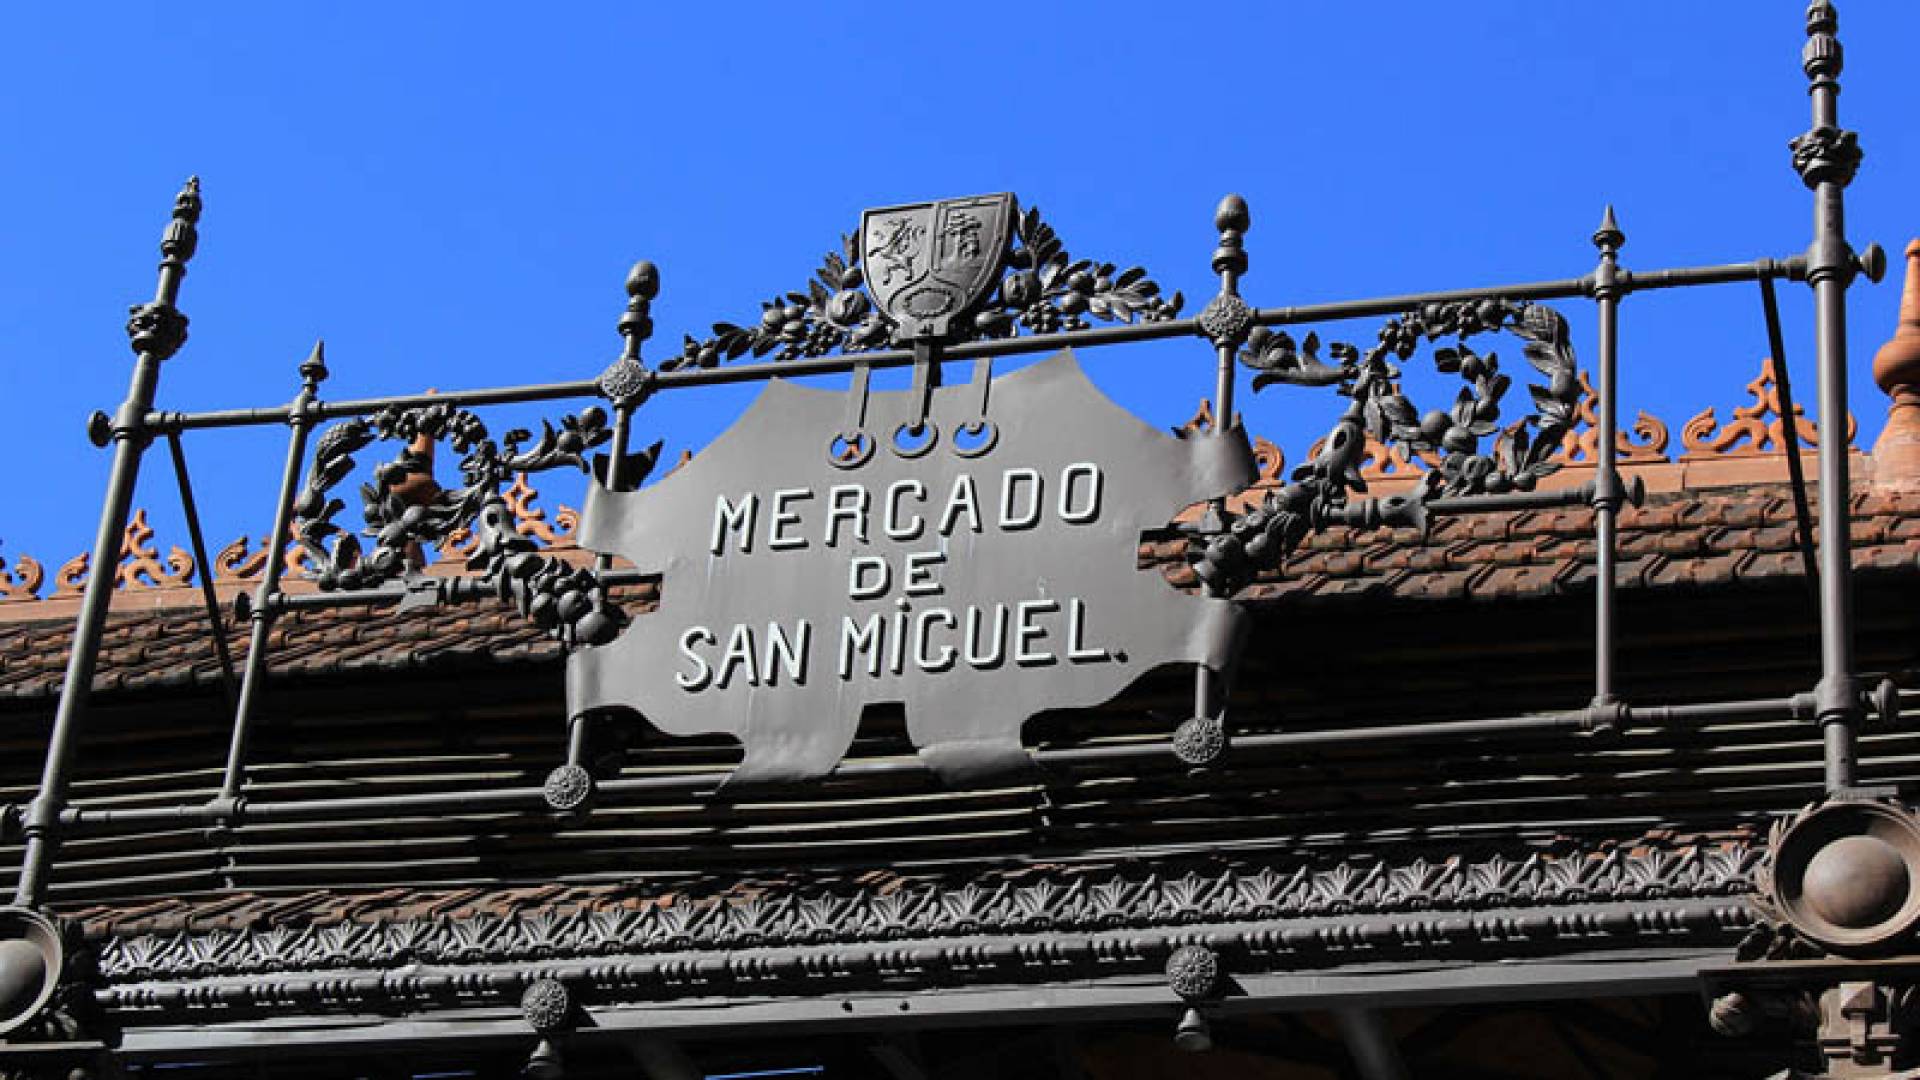 MERCADO SAN MIGUEL E DINTORNI, Mercado De San Miguel